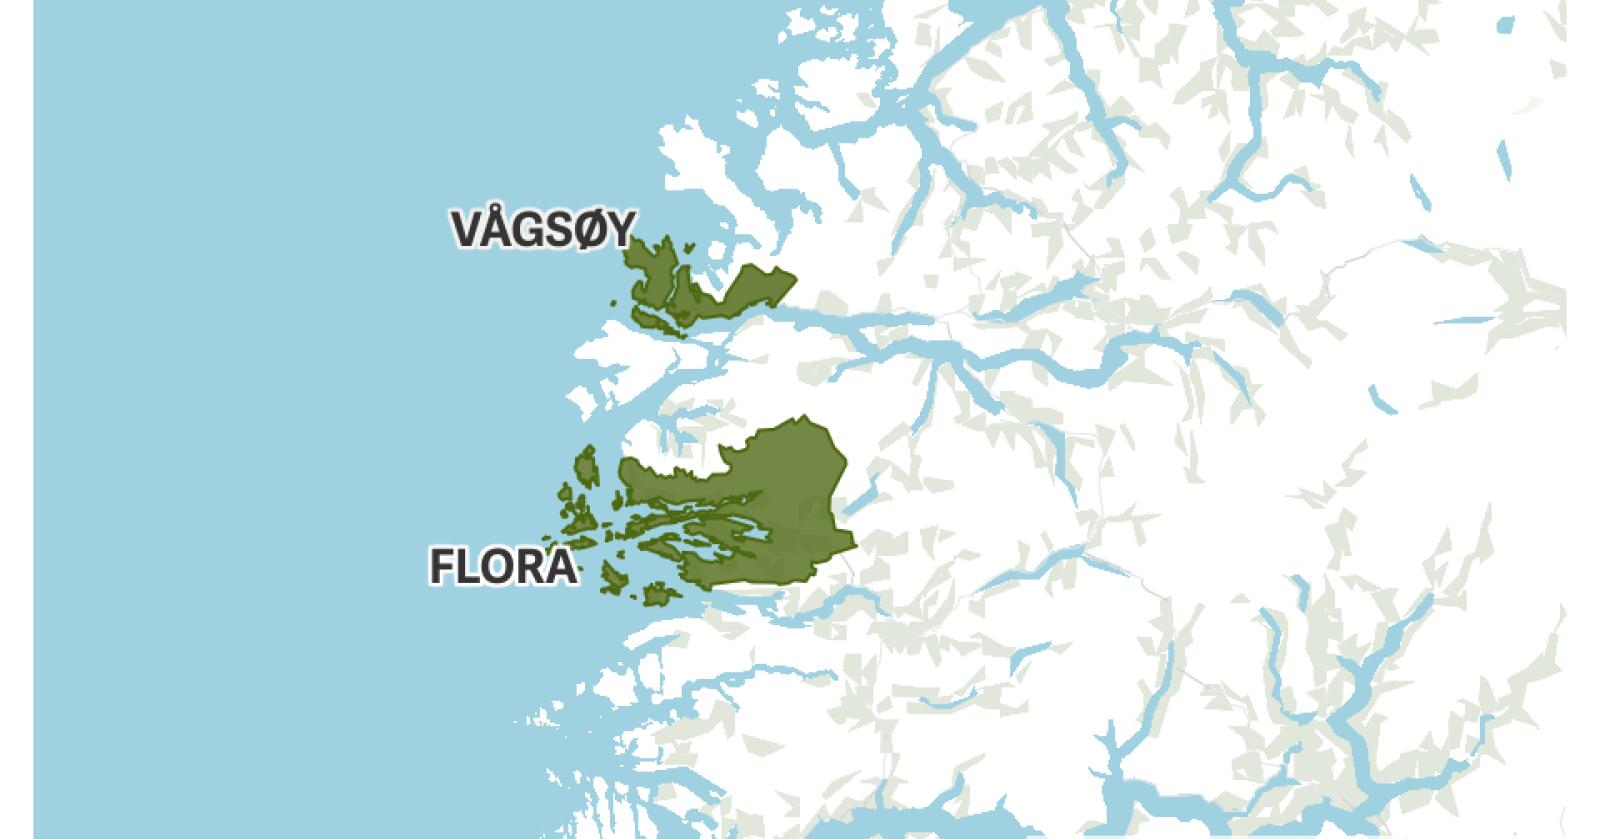 I folkeavstemningen tok innbyggerne stilling til om Vågsøy og Flora skulle gjenoppstå som egne kommuner. Et svært knapt flertall stemte for at Kinn kommune skal bestå som en samlet kommune. 